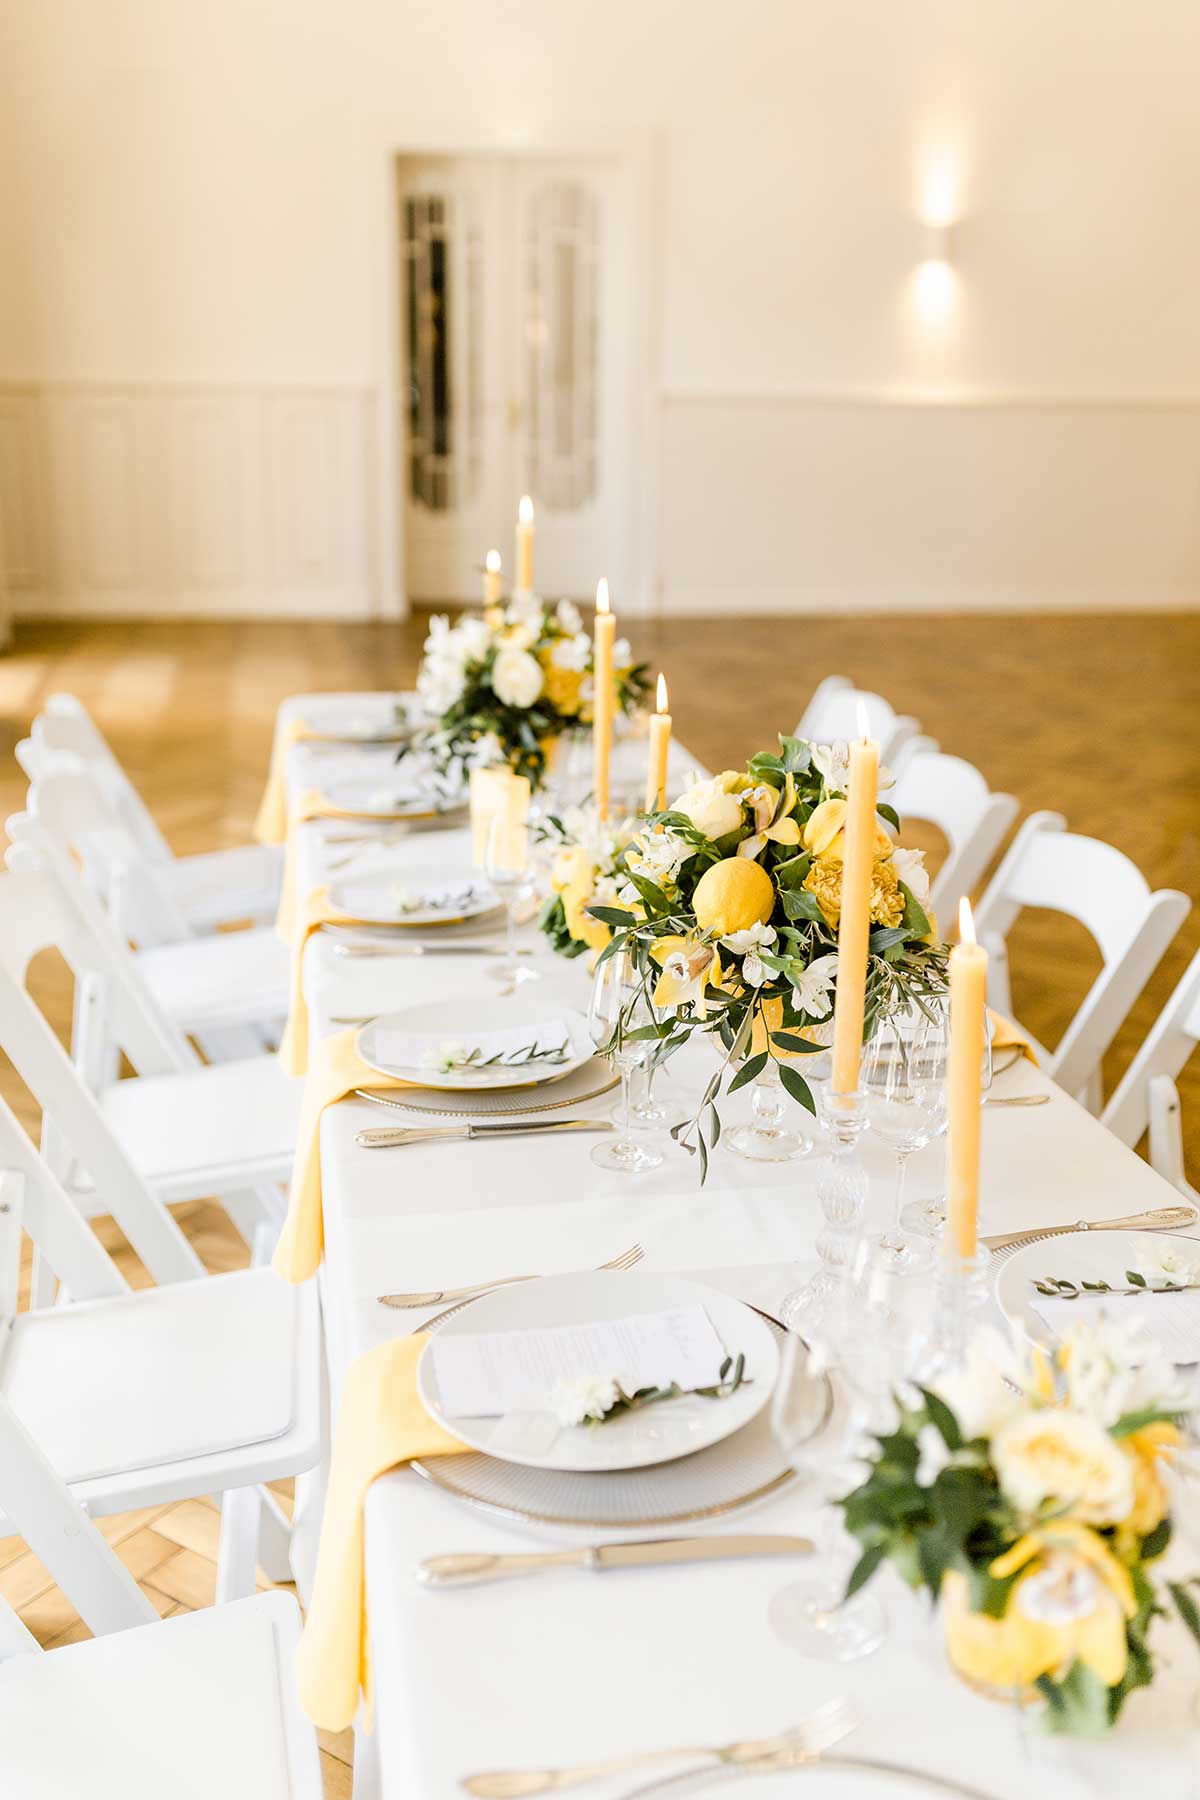 Tischdeko bei der Hochzeit in Gelb und Weiß